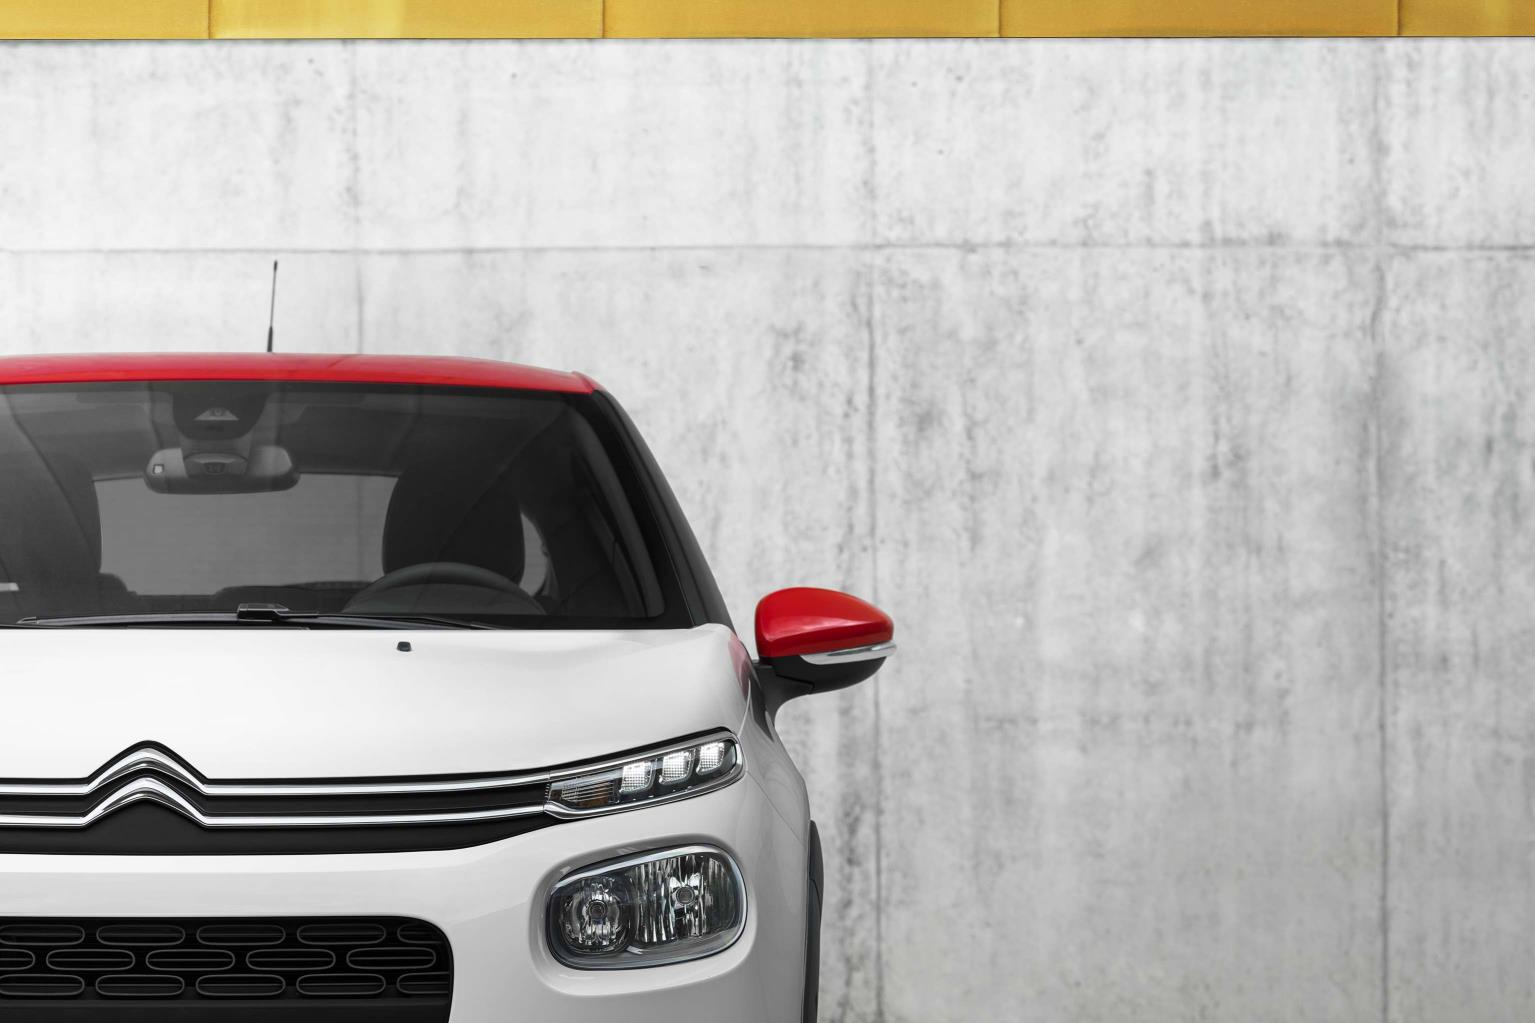 100.000 unidades vendidas del nuevo Citroën C3